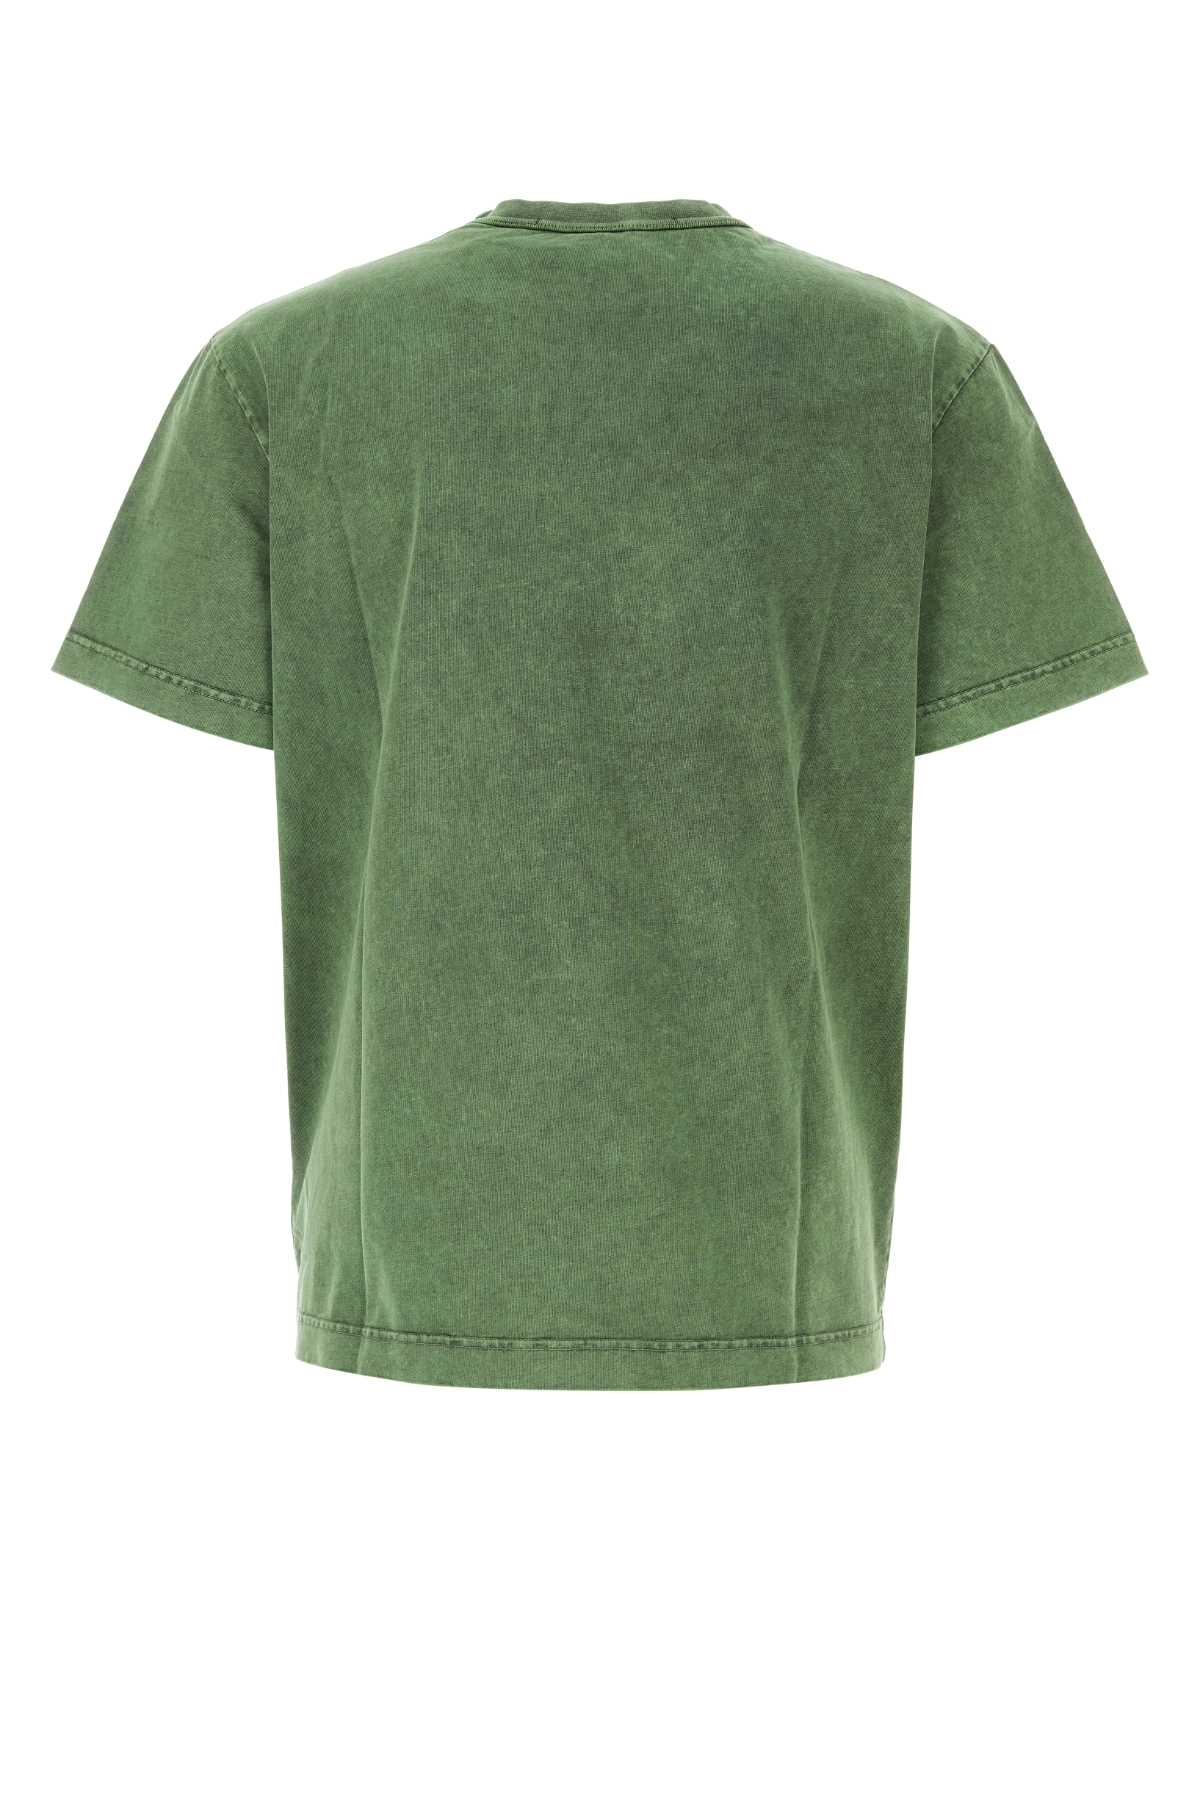 Alexander Wang Green Cotton T-shirt In Acidfern